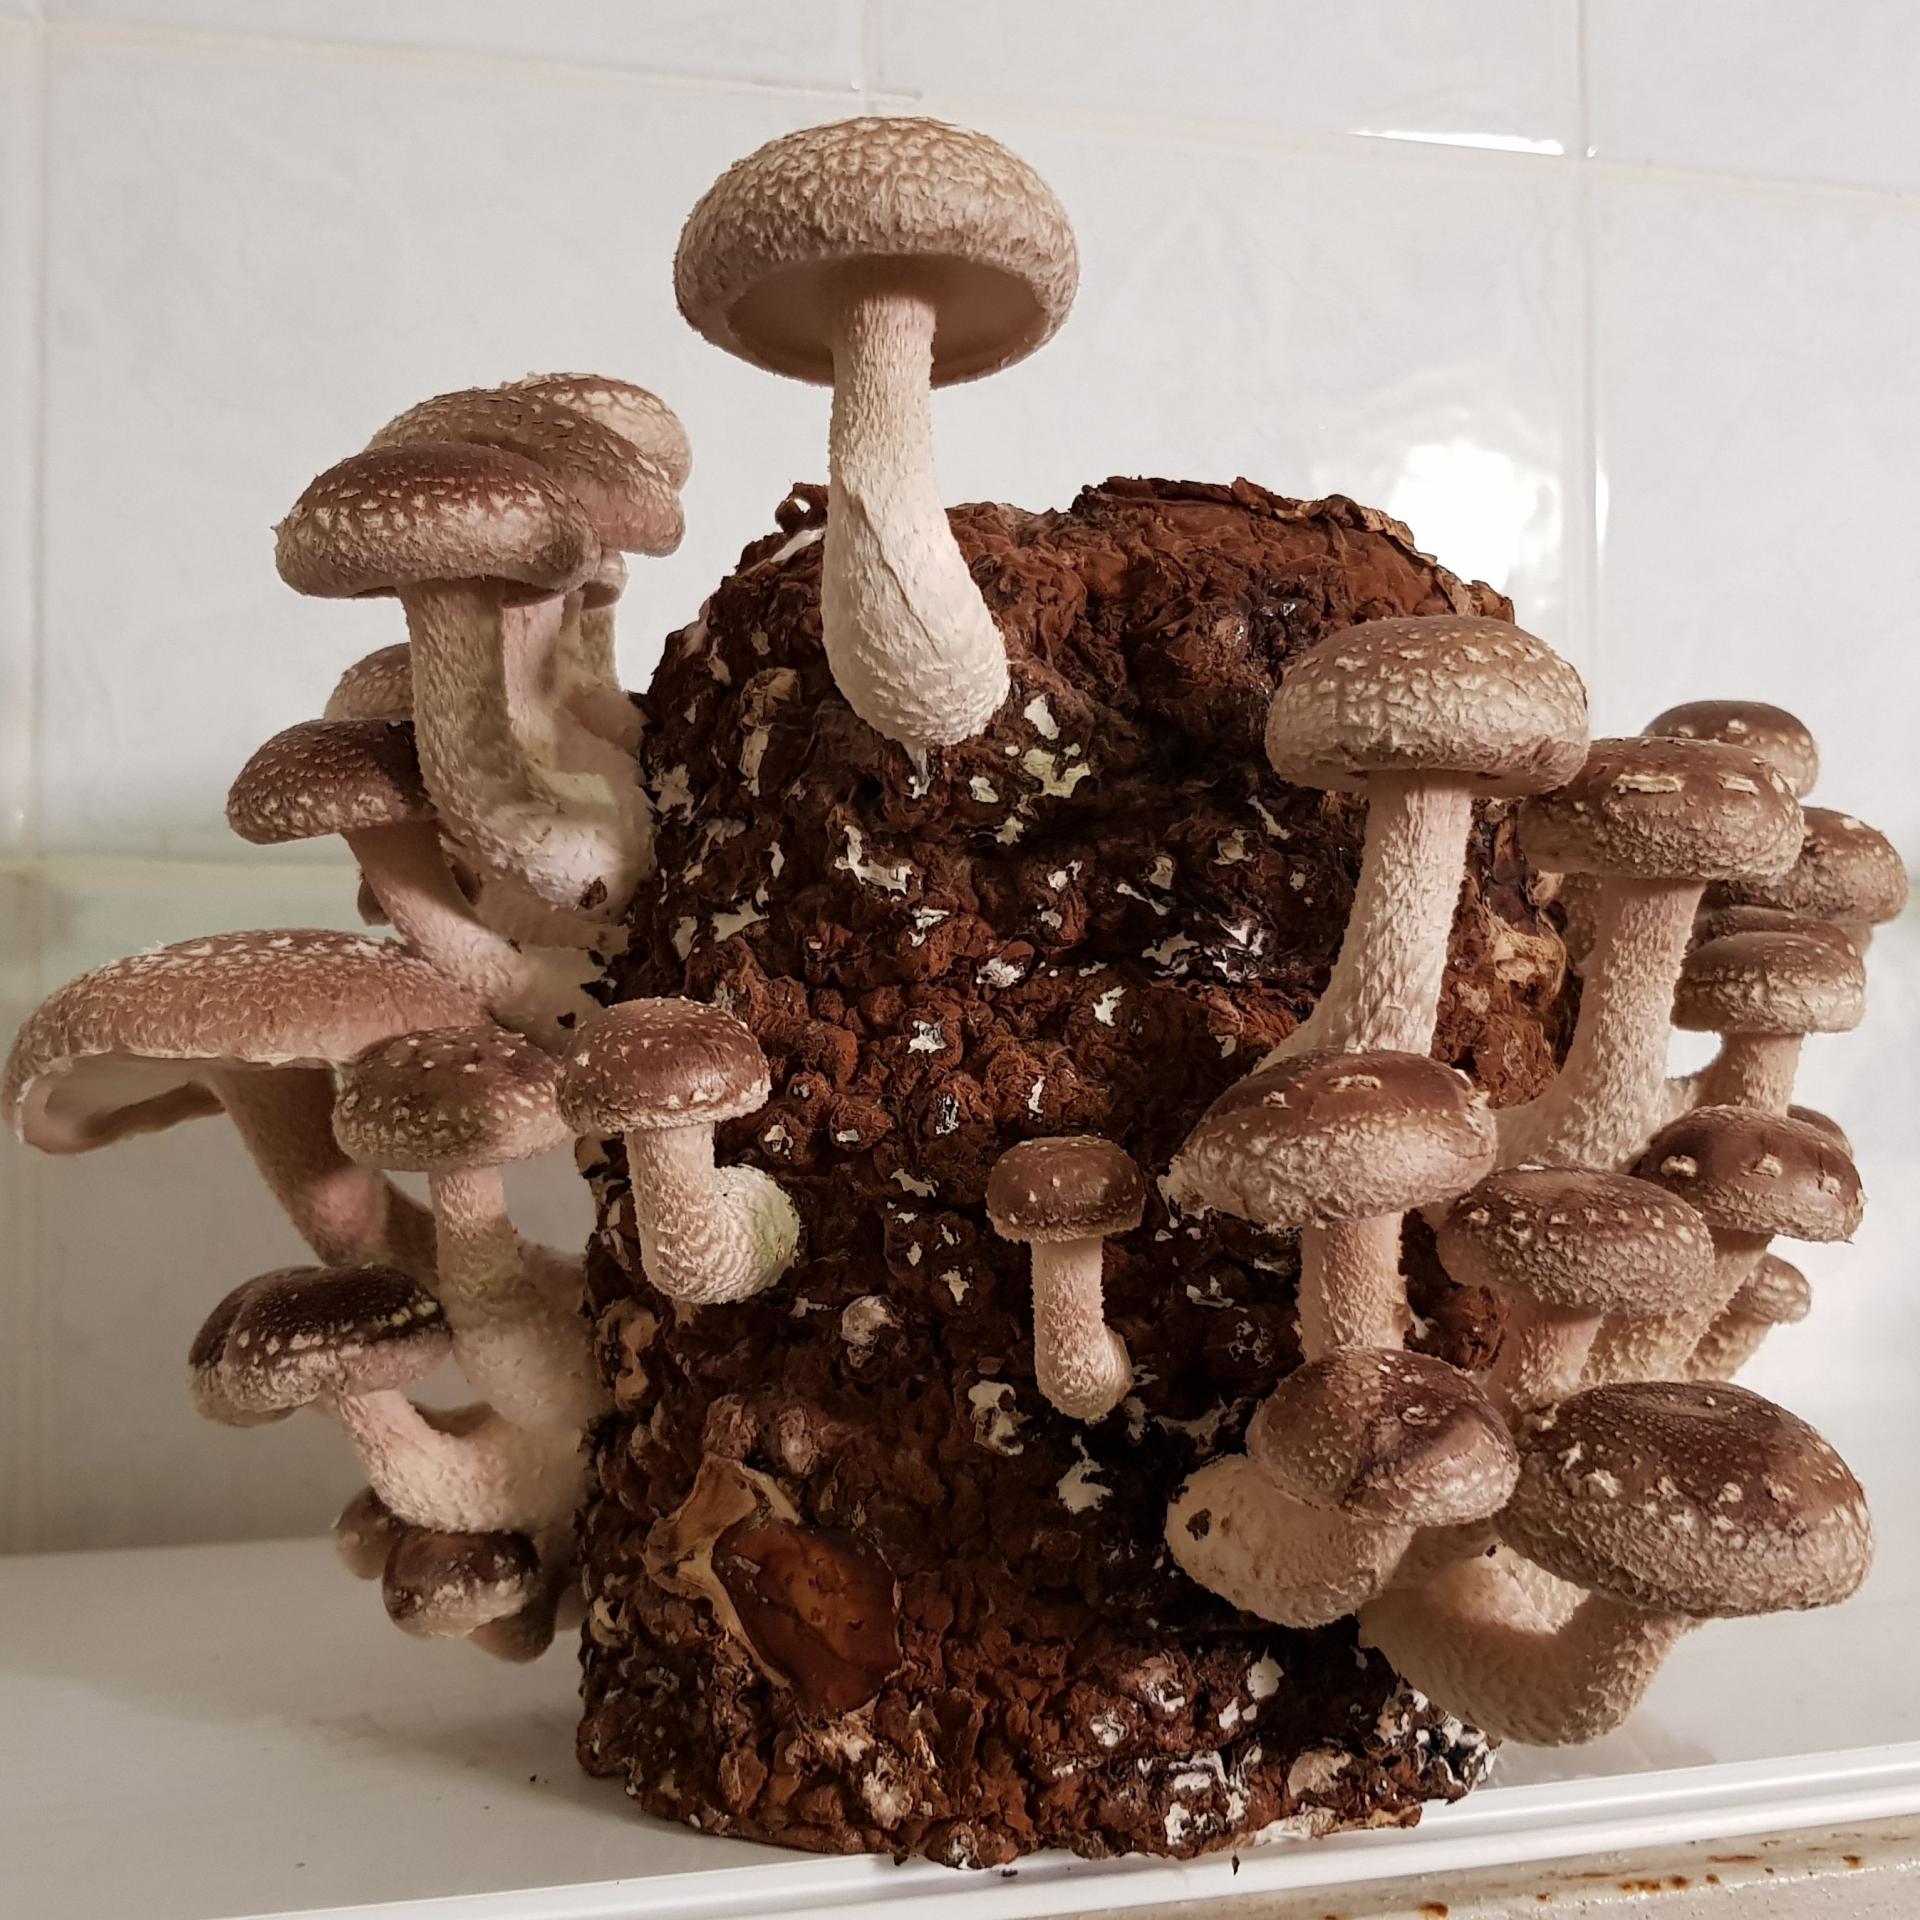 Польза грибов и пищевая ценность грибов - витамины и минералы